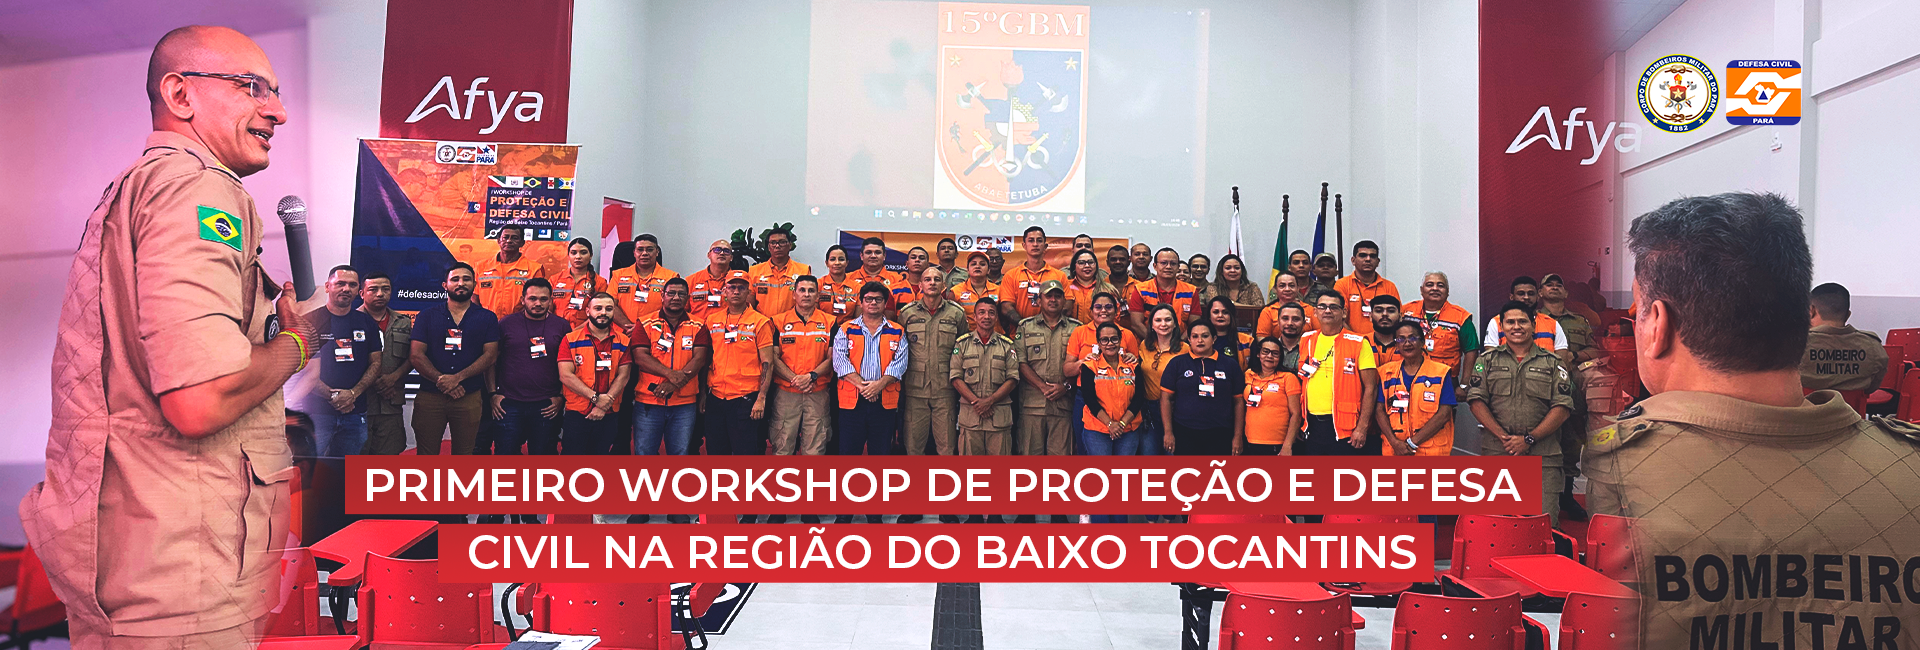 CBMPA E CEDEC REALIZAM PRIMEIRO WORKSHOP DE PROTEÇÃO E DEFESA CIVIL NA REGIÃO DO BAIXO TOCANTINS